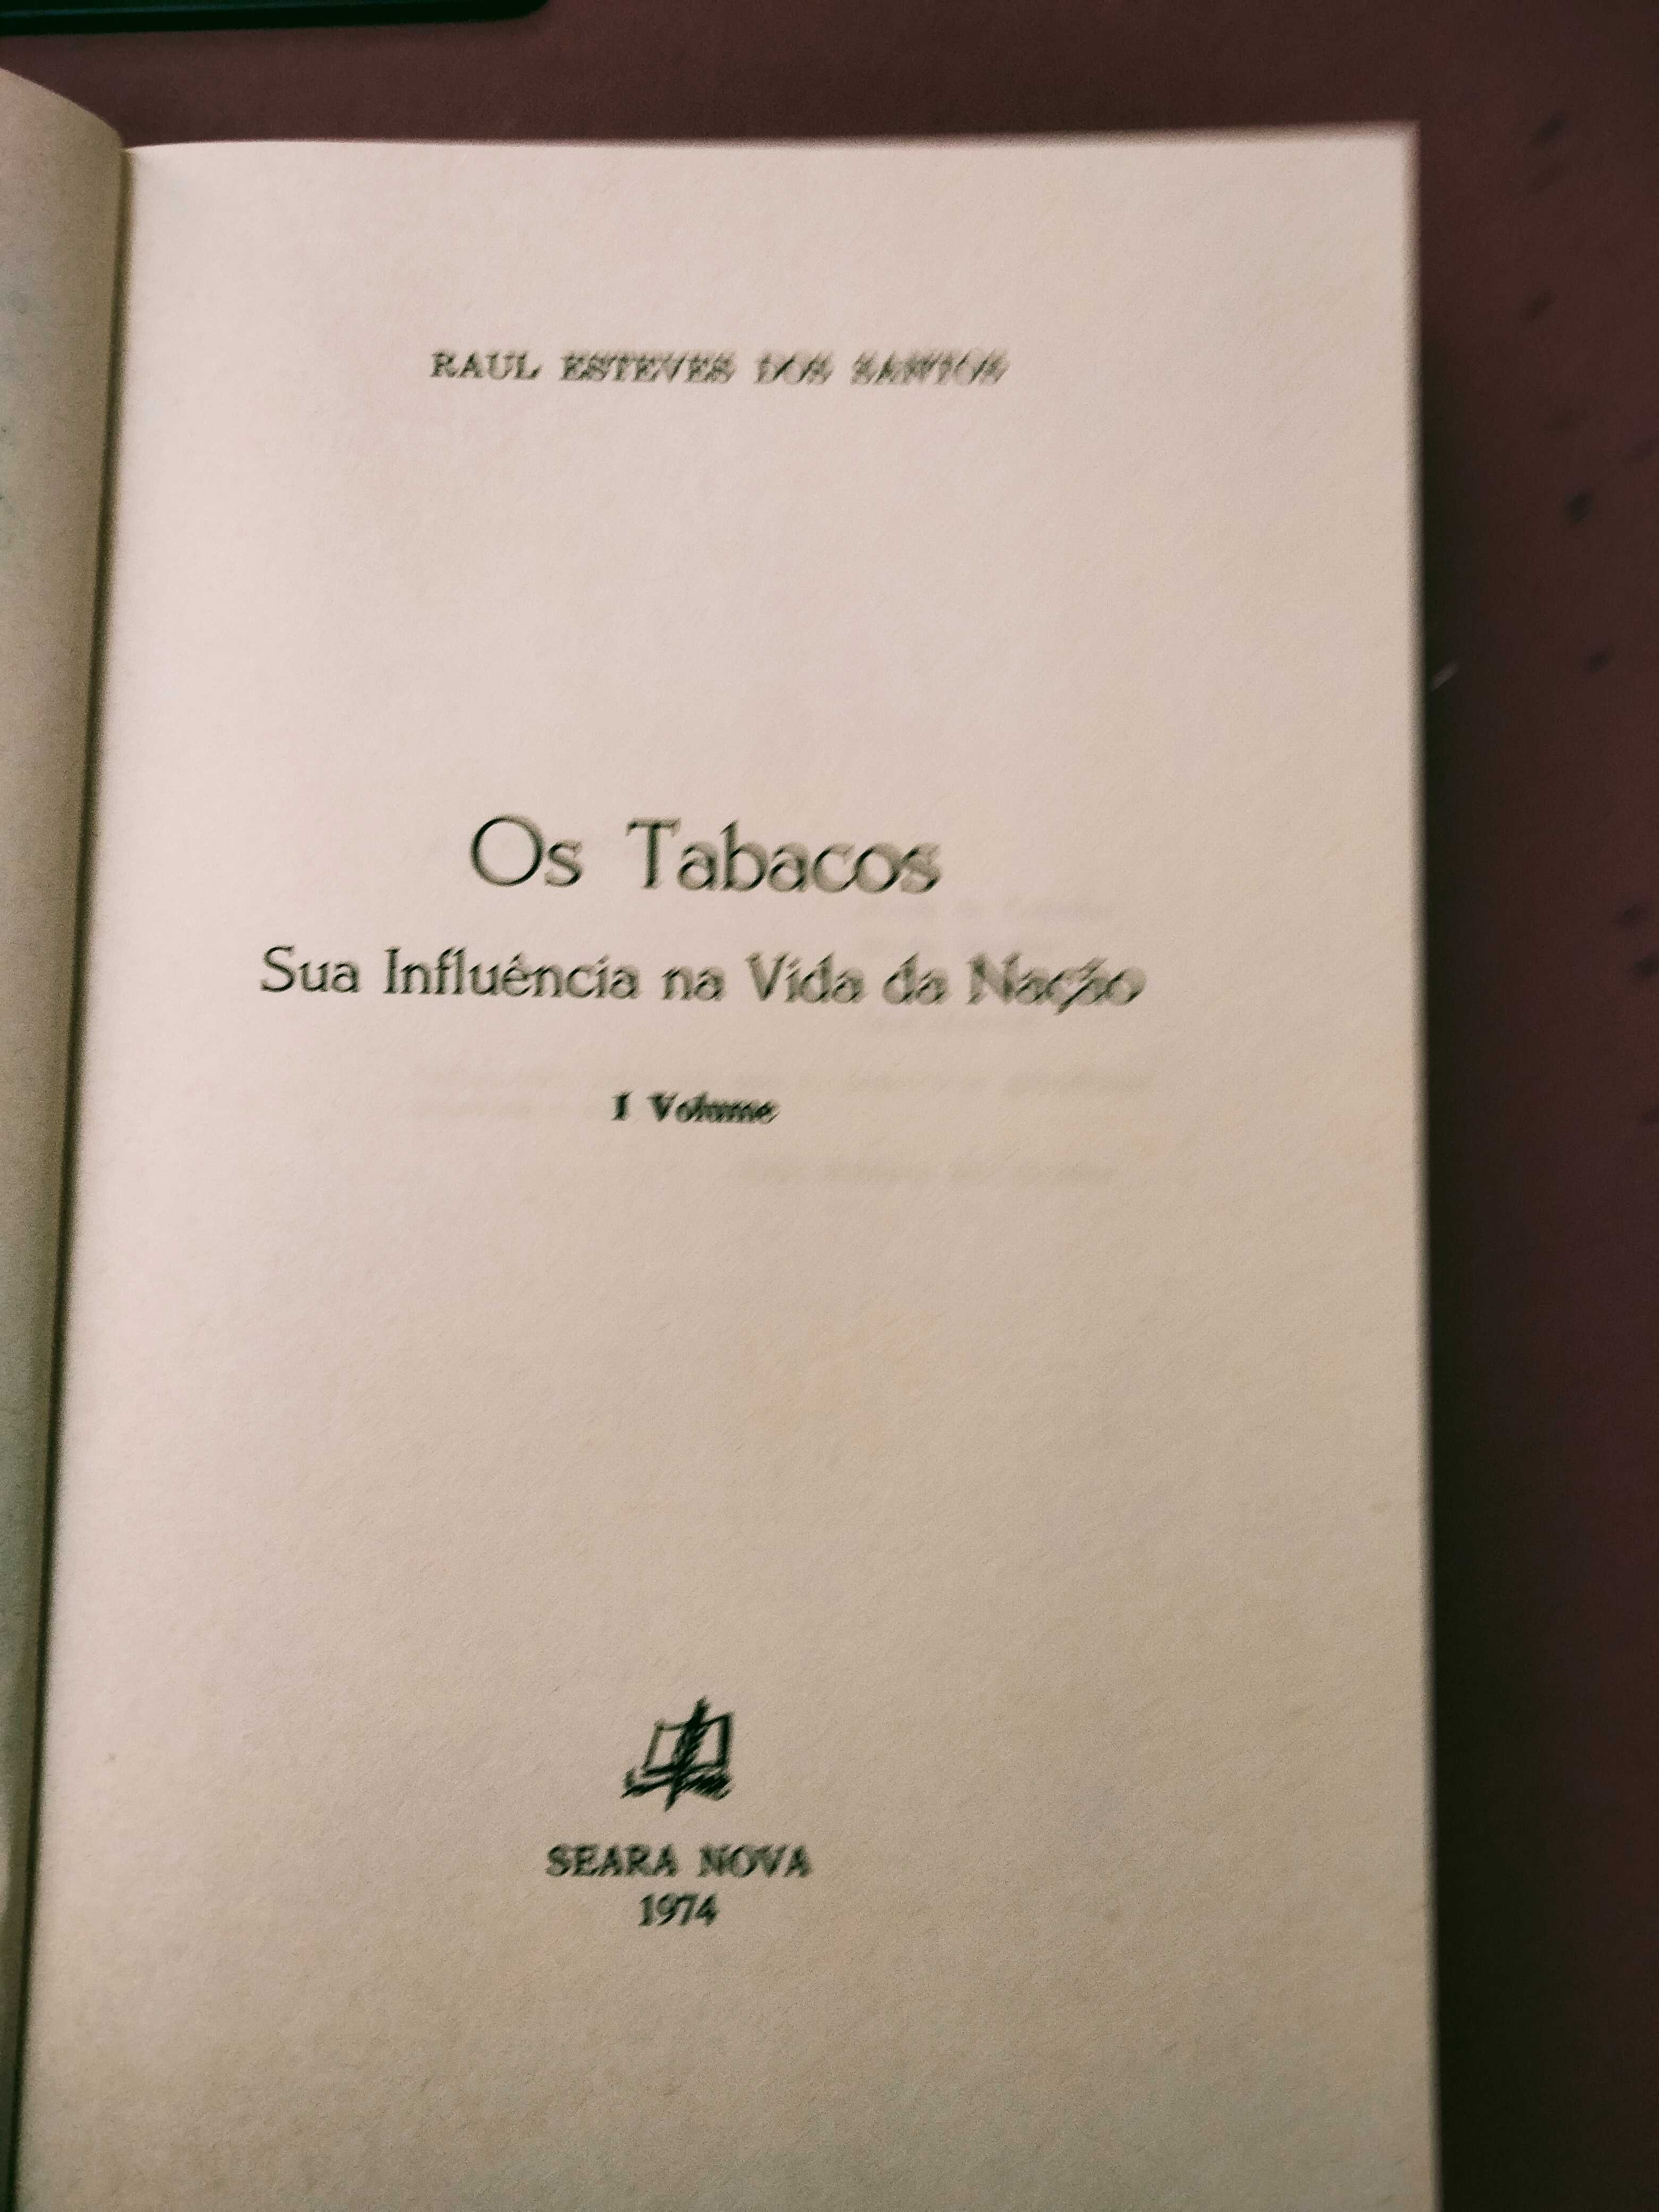 Os Tabacos: Sua influência na Vida da Nação - Raul Esteves dos Santos